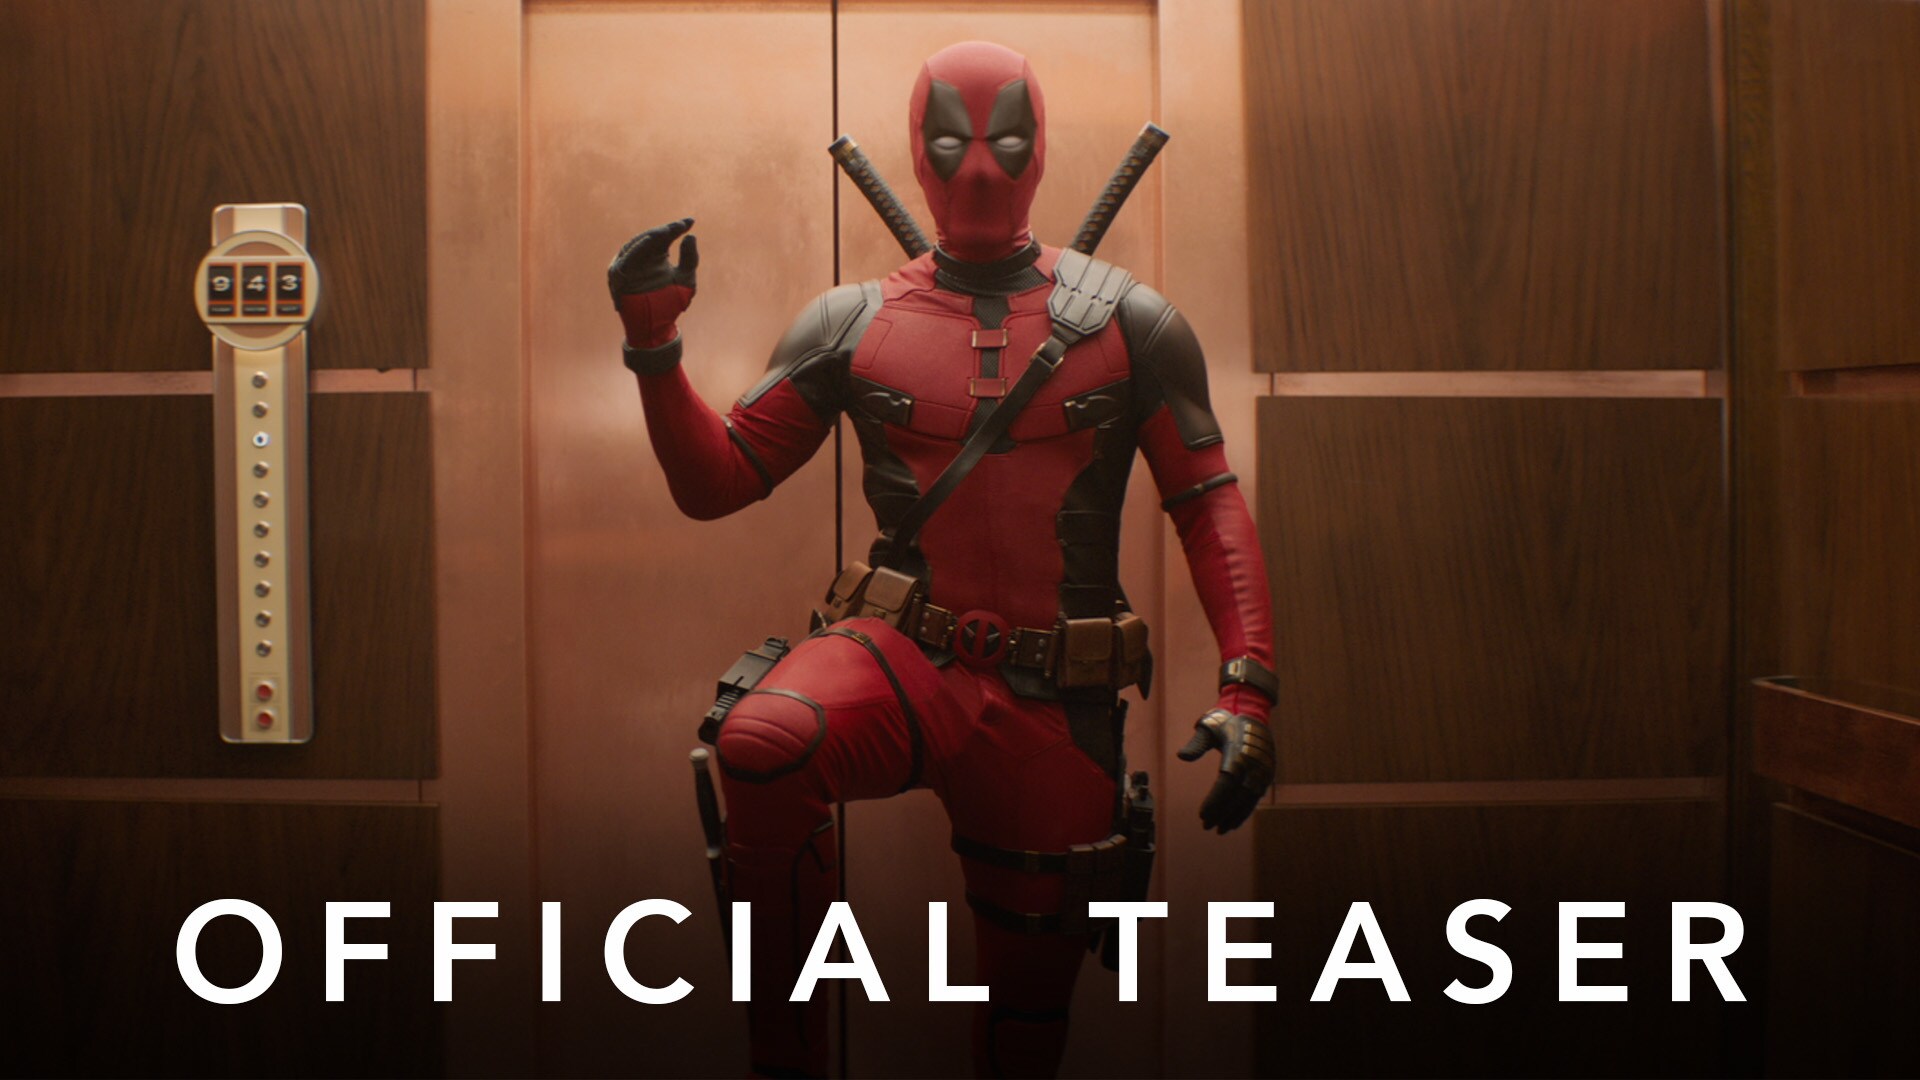 Official Teaser Trailer thumbnail for Marvel Studios' Deadpool & Wolverine movie.